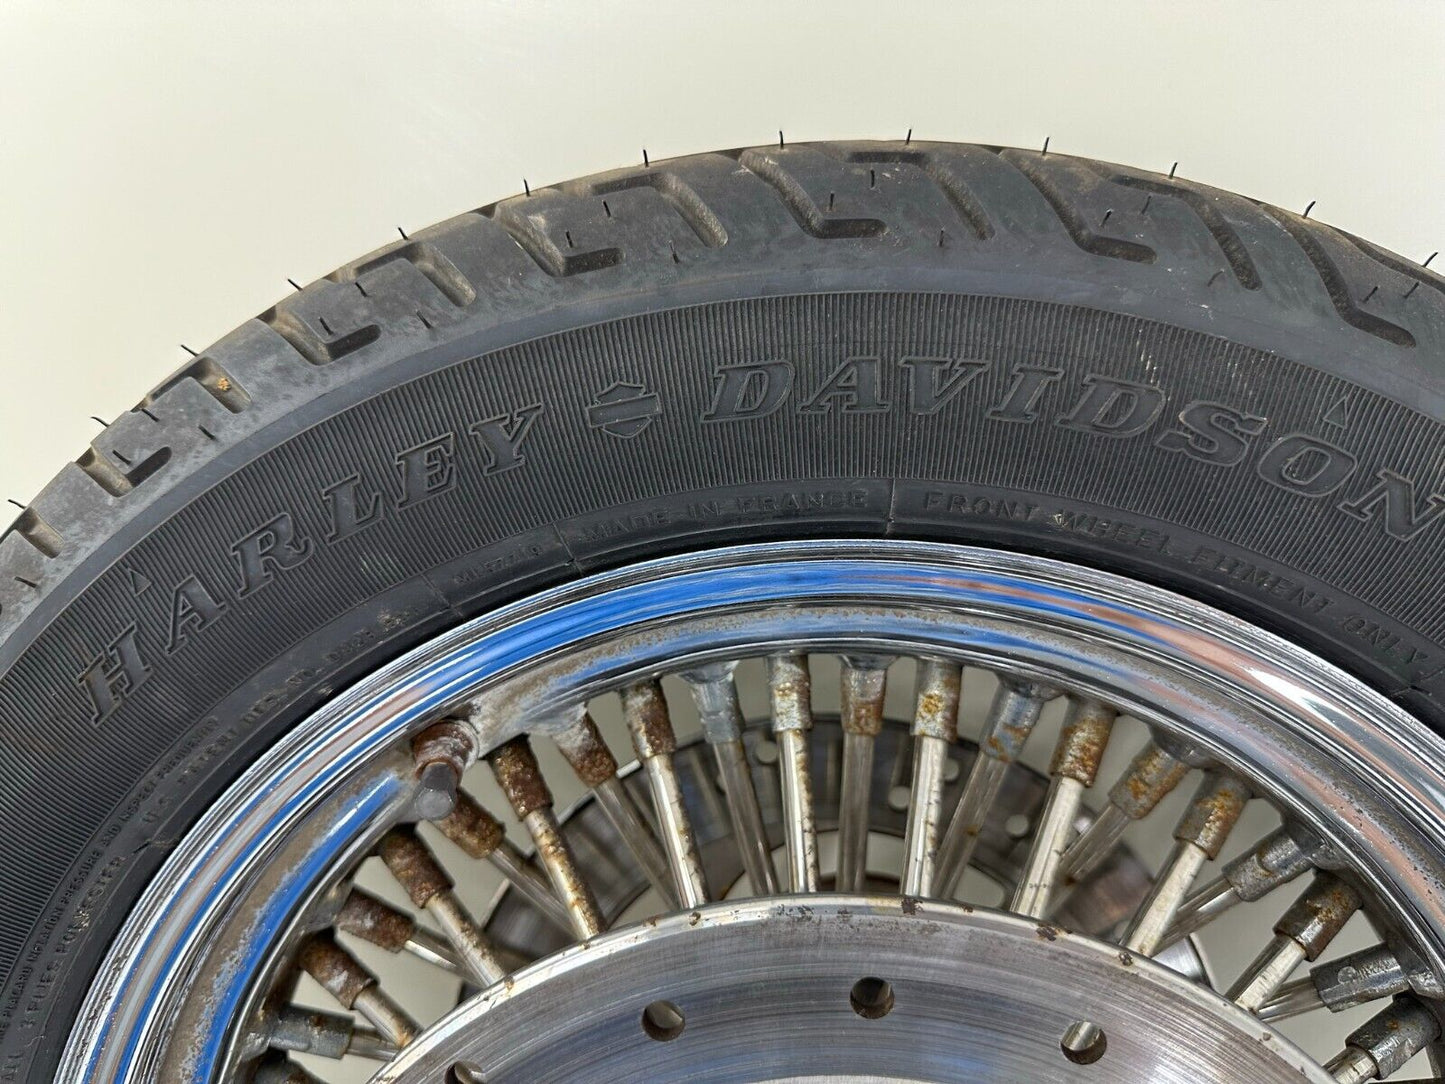 2005 HARLEY FLH ROADKING 16" Front Wheel Rim Oversize Spoke Tire